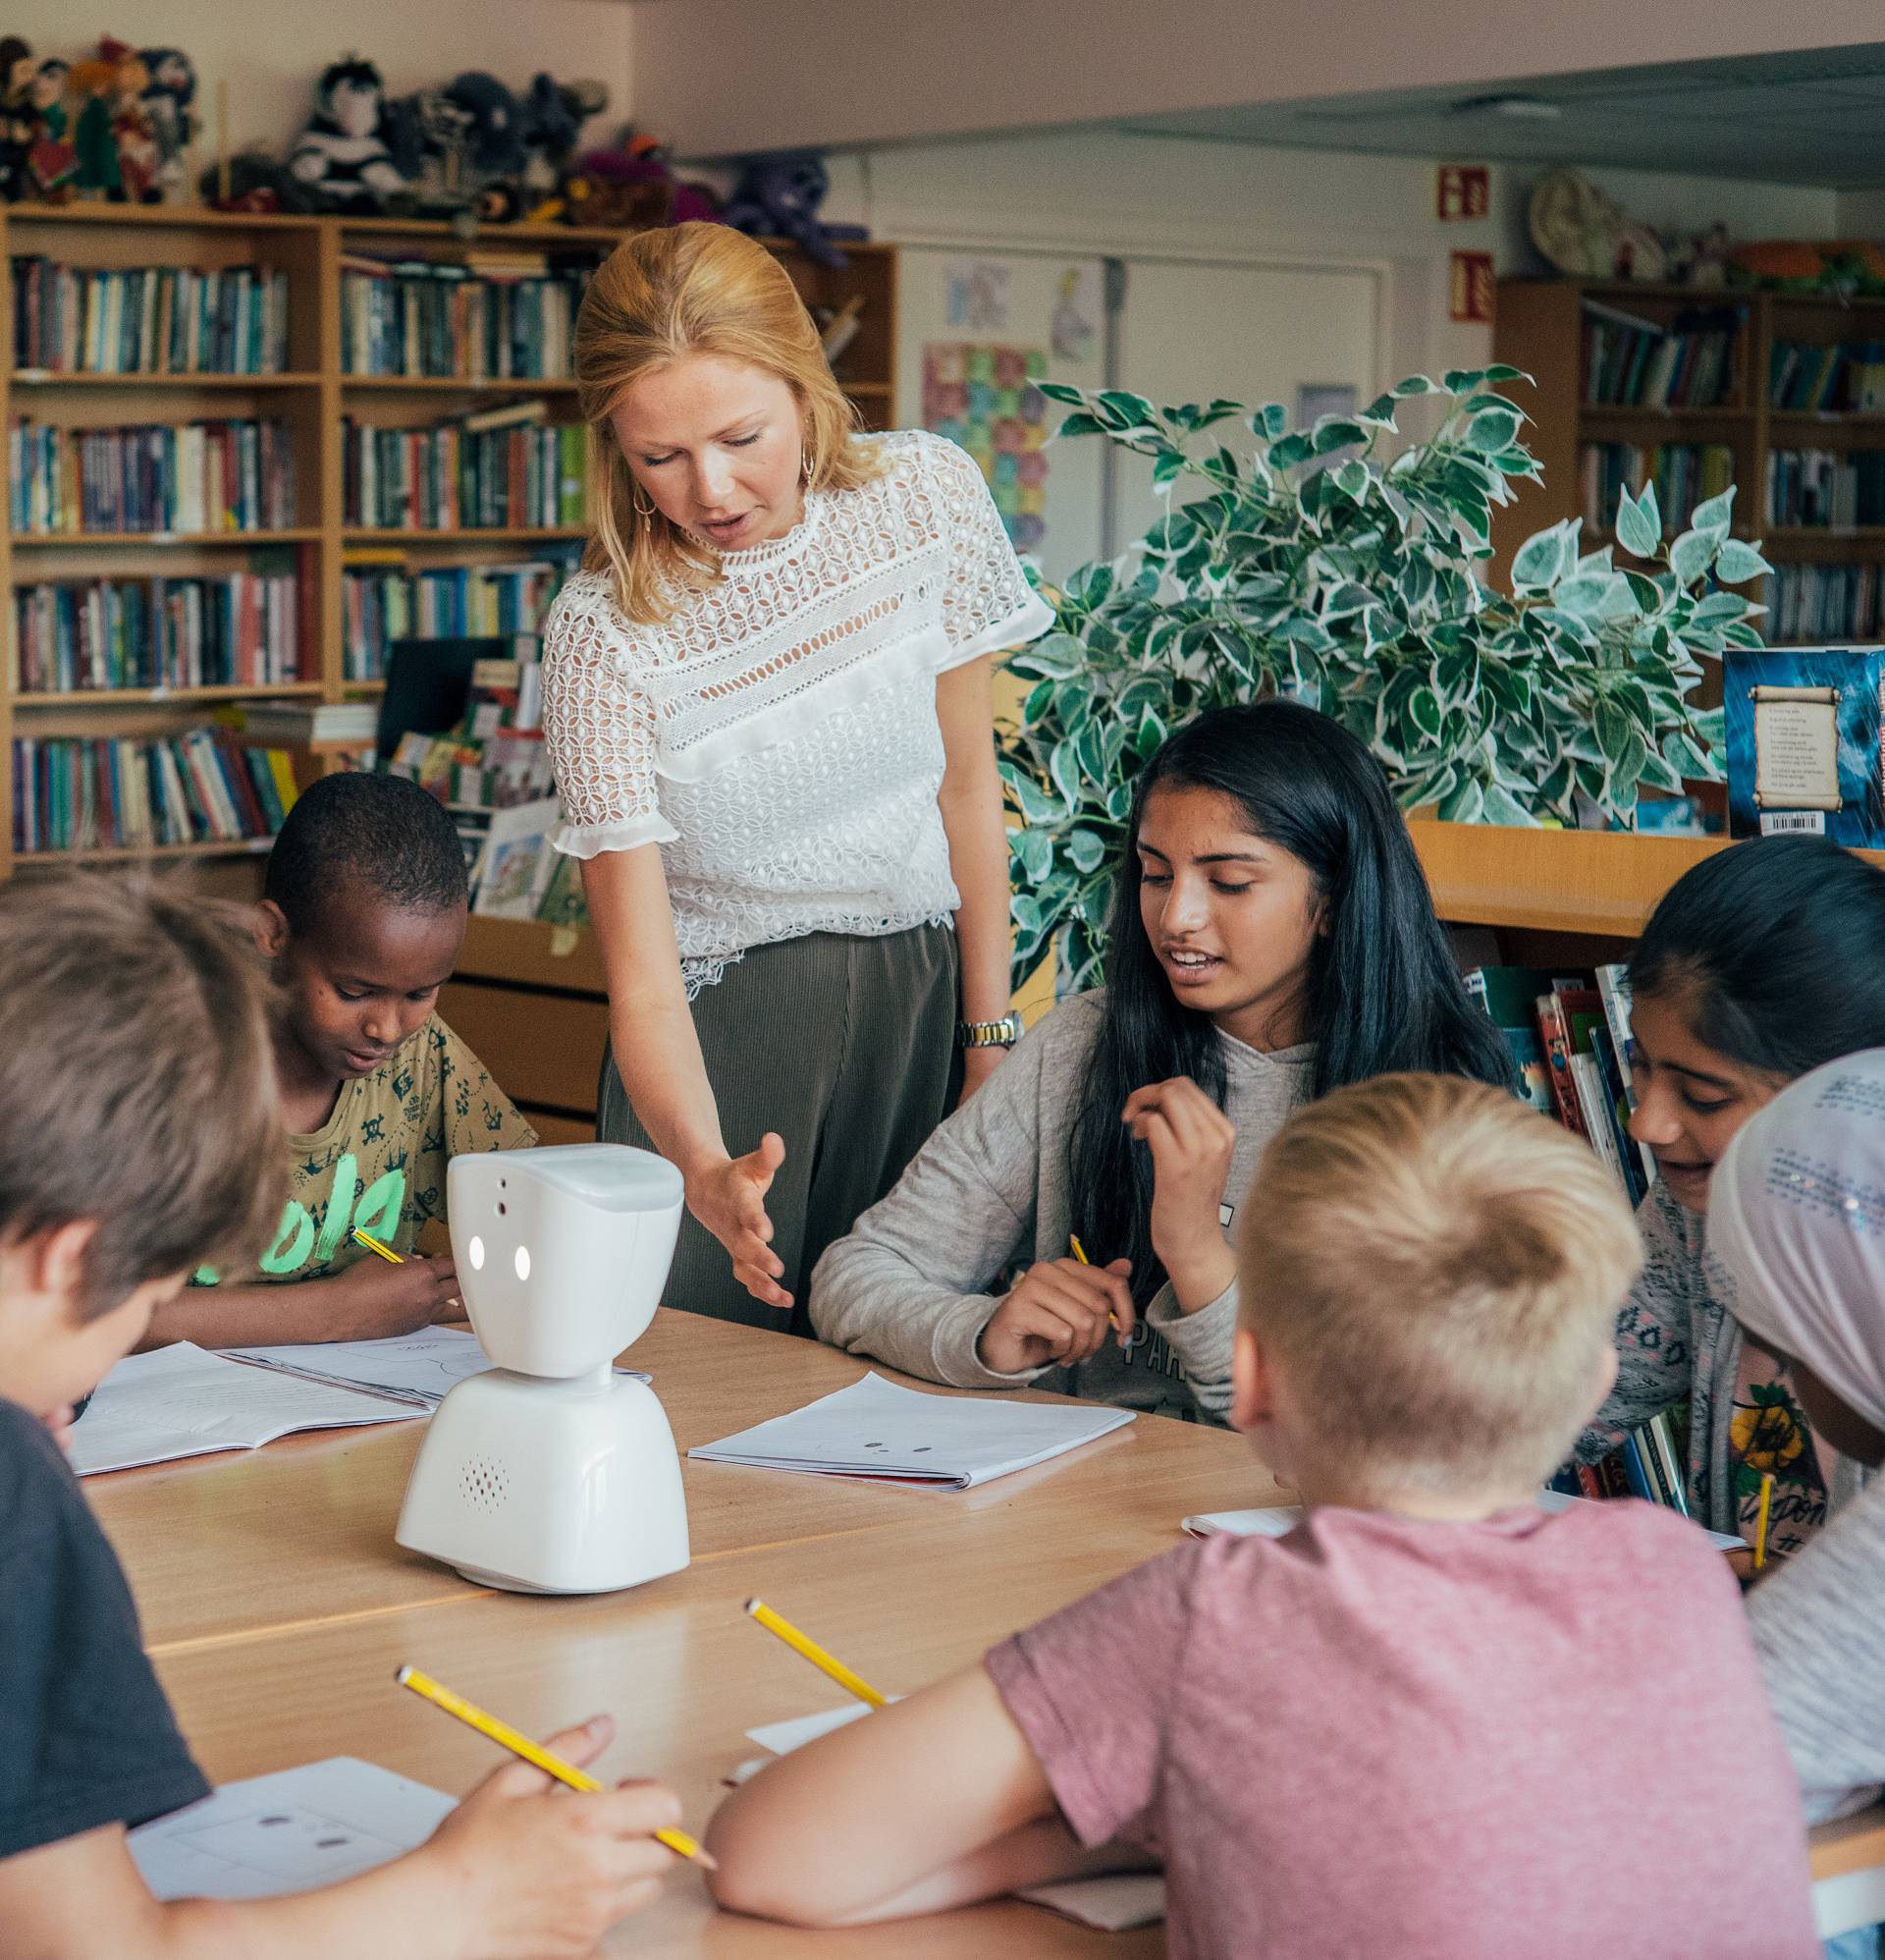 No Isolationâs AV1 robot in a classroom in Norway. It helps children with long term illnesses keep up with their schoolwork remotely. Credit: No Isolation